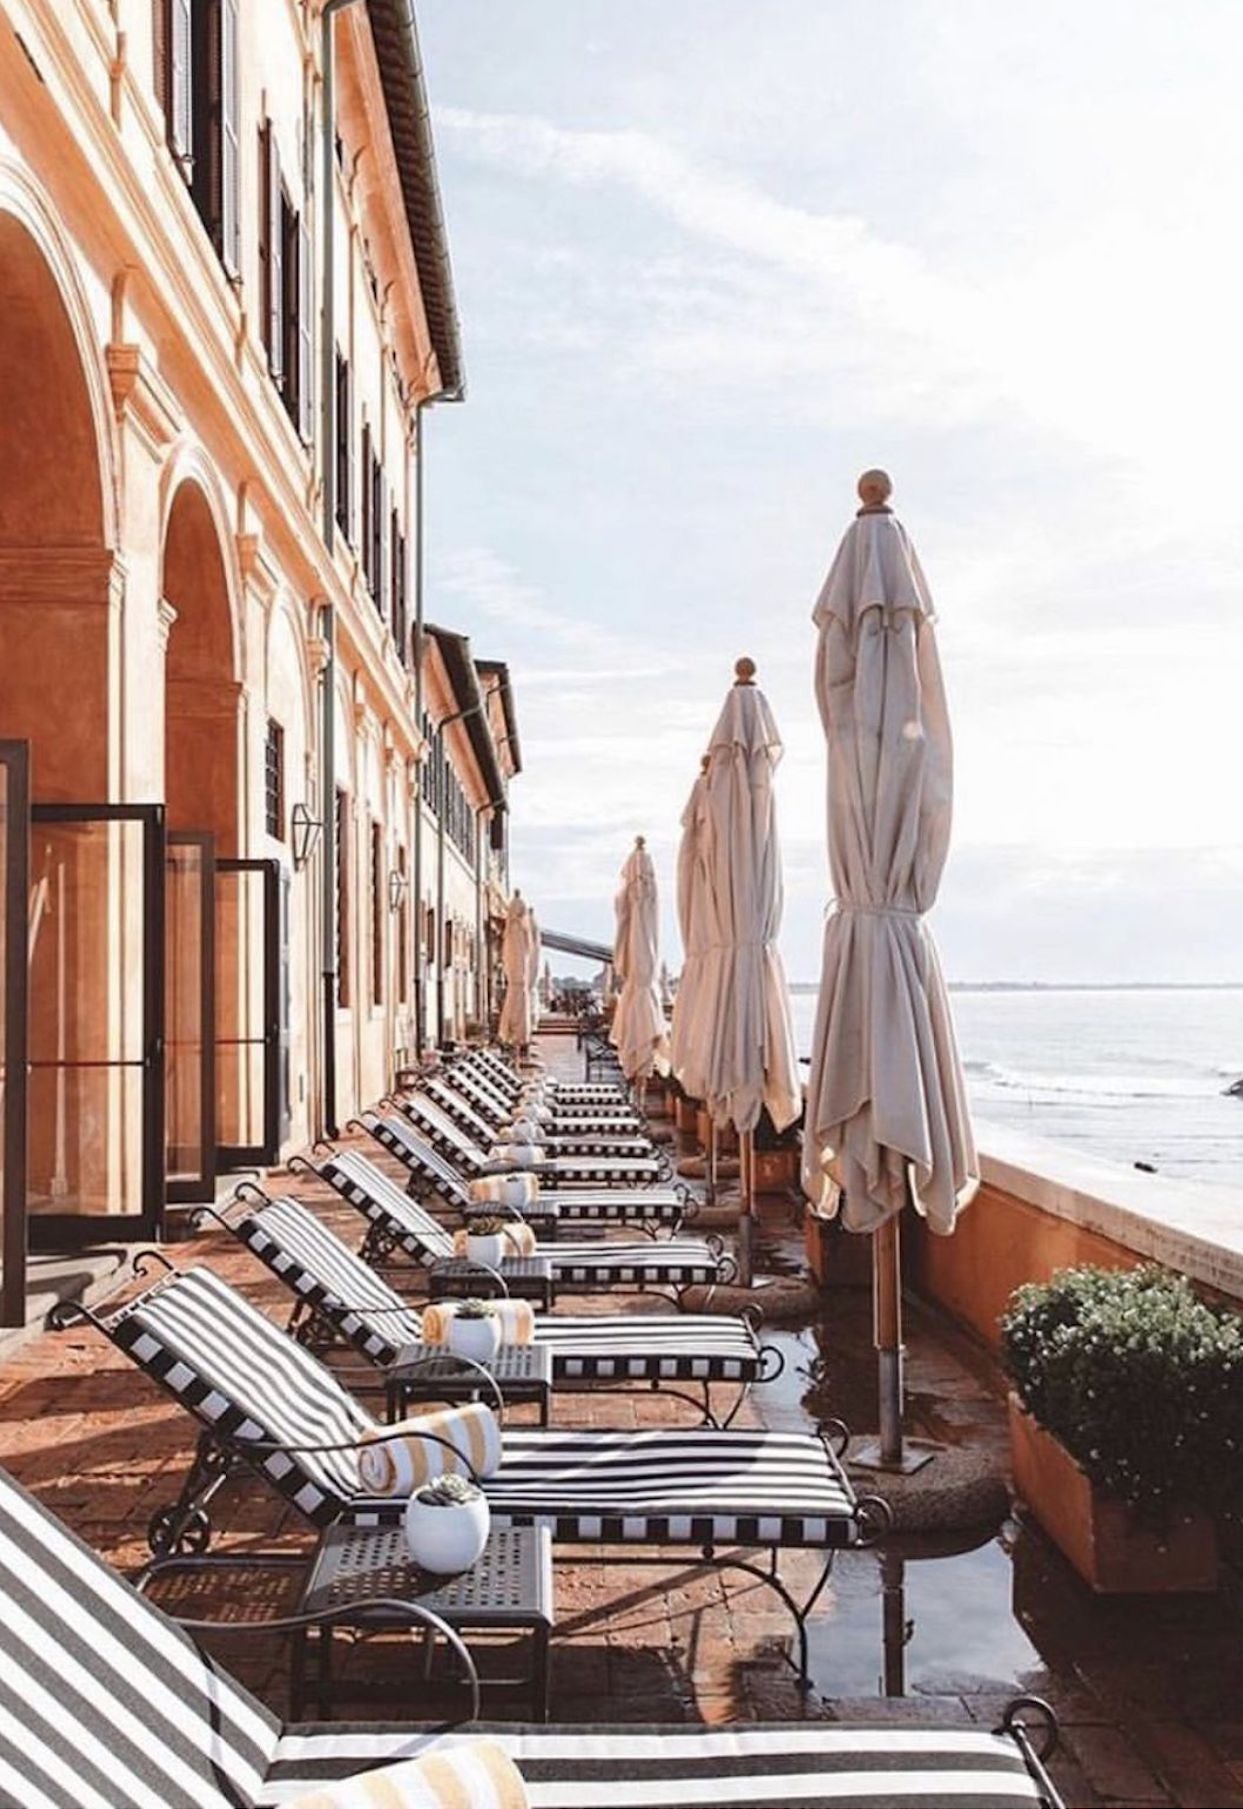 Sun beds in the outdoor setting of La Costa Vecchia Hotel, Ladispoli, in Rome